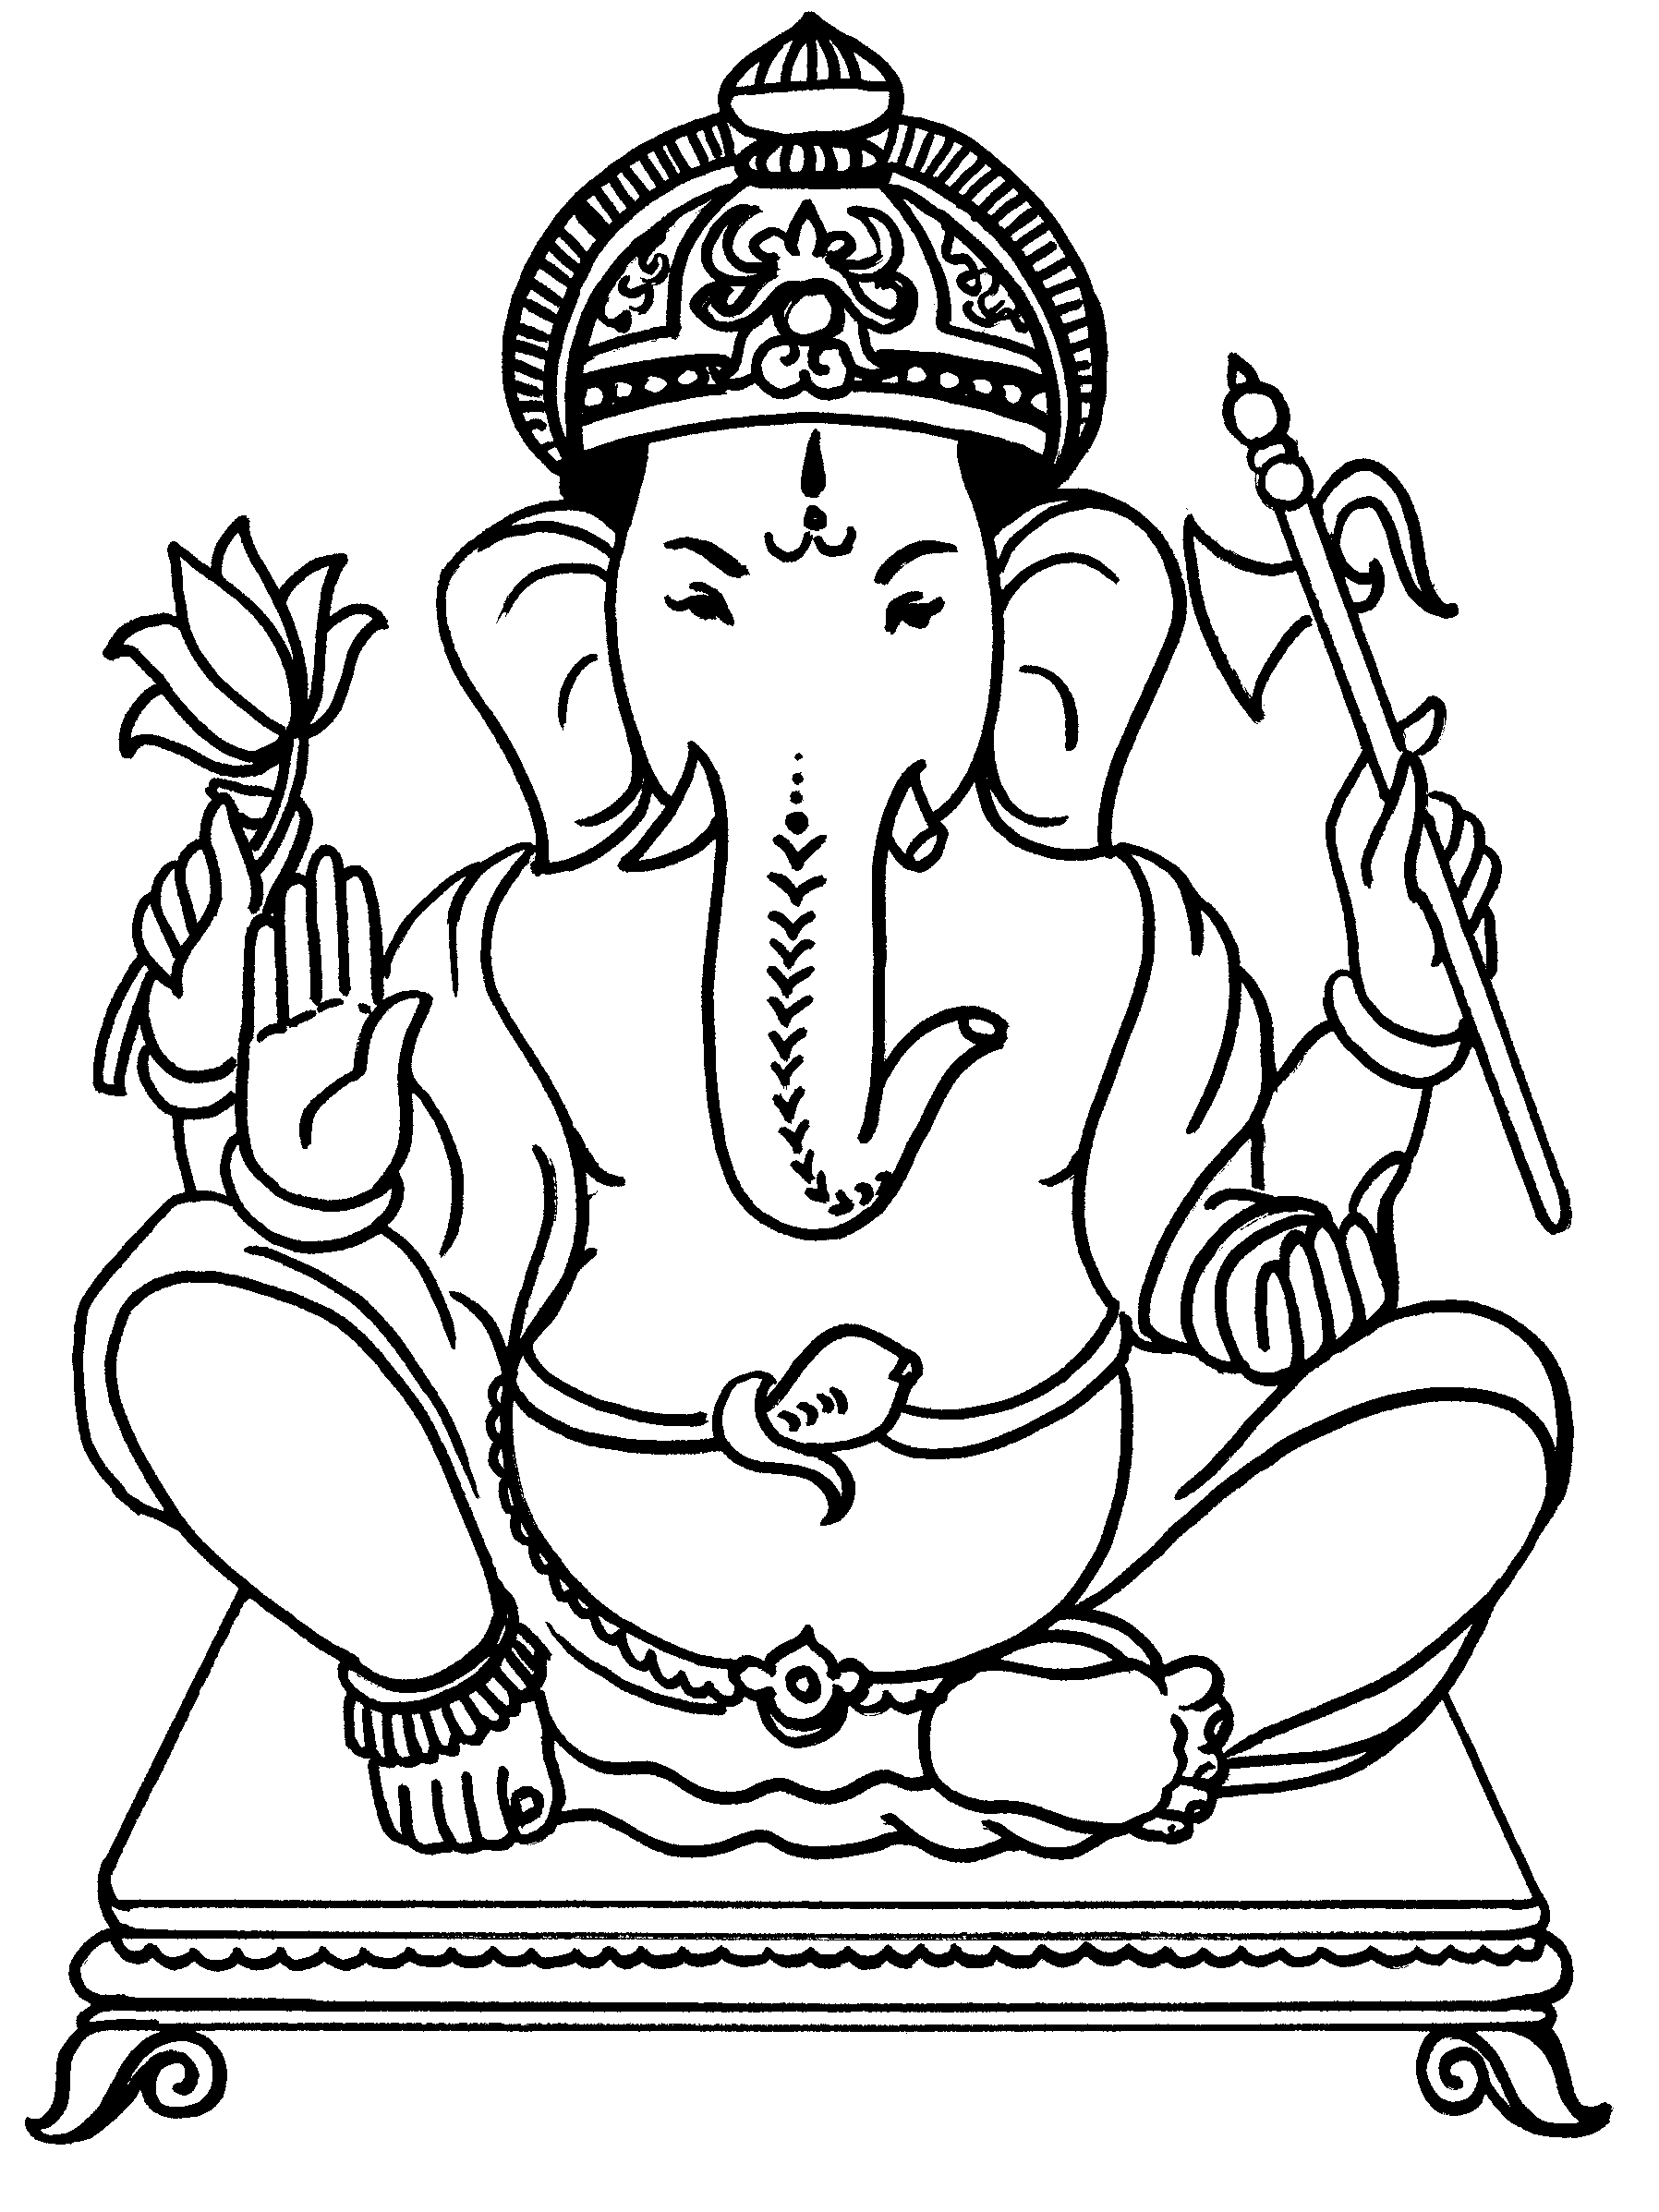 Рисунок про Ганеша древней Индии